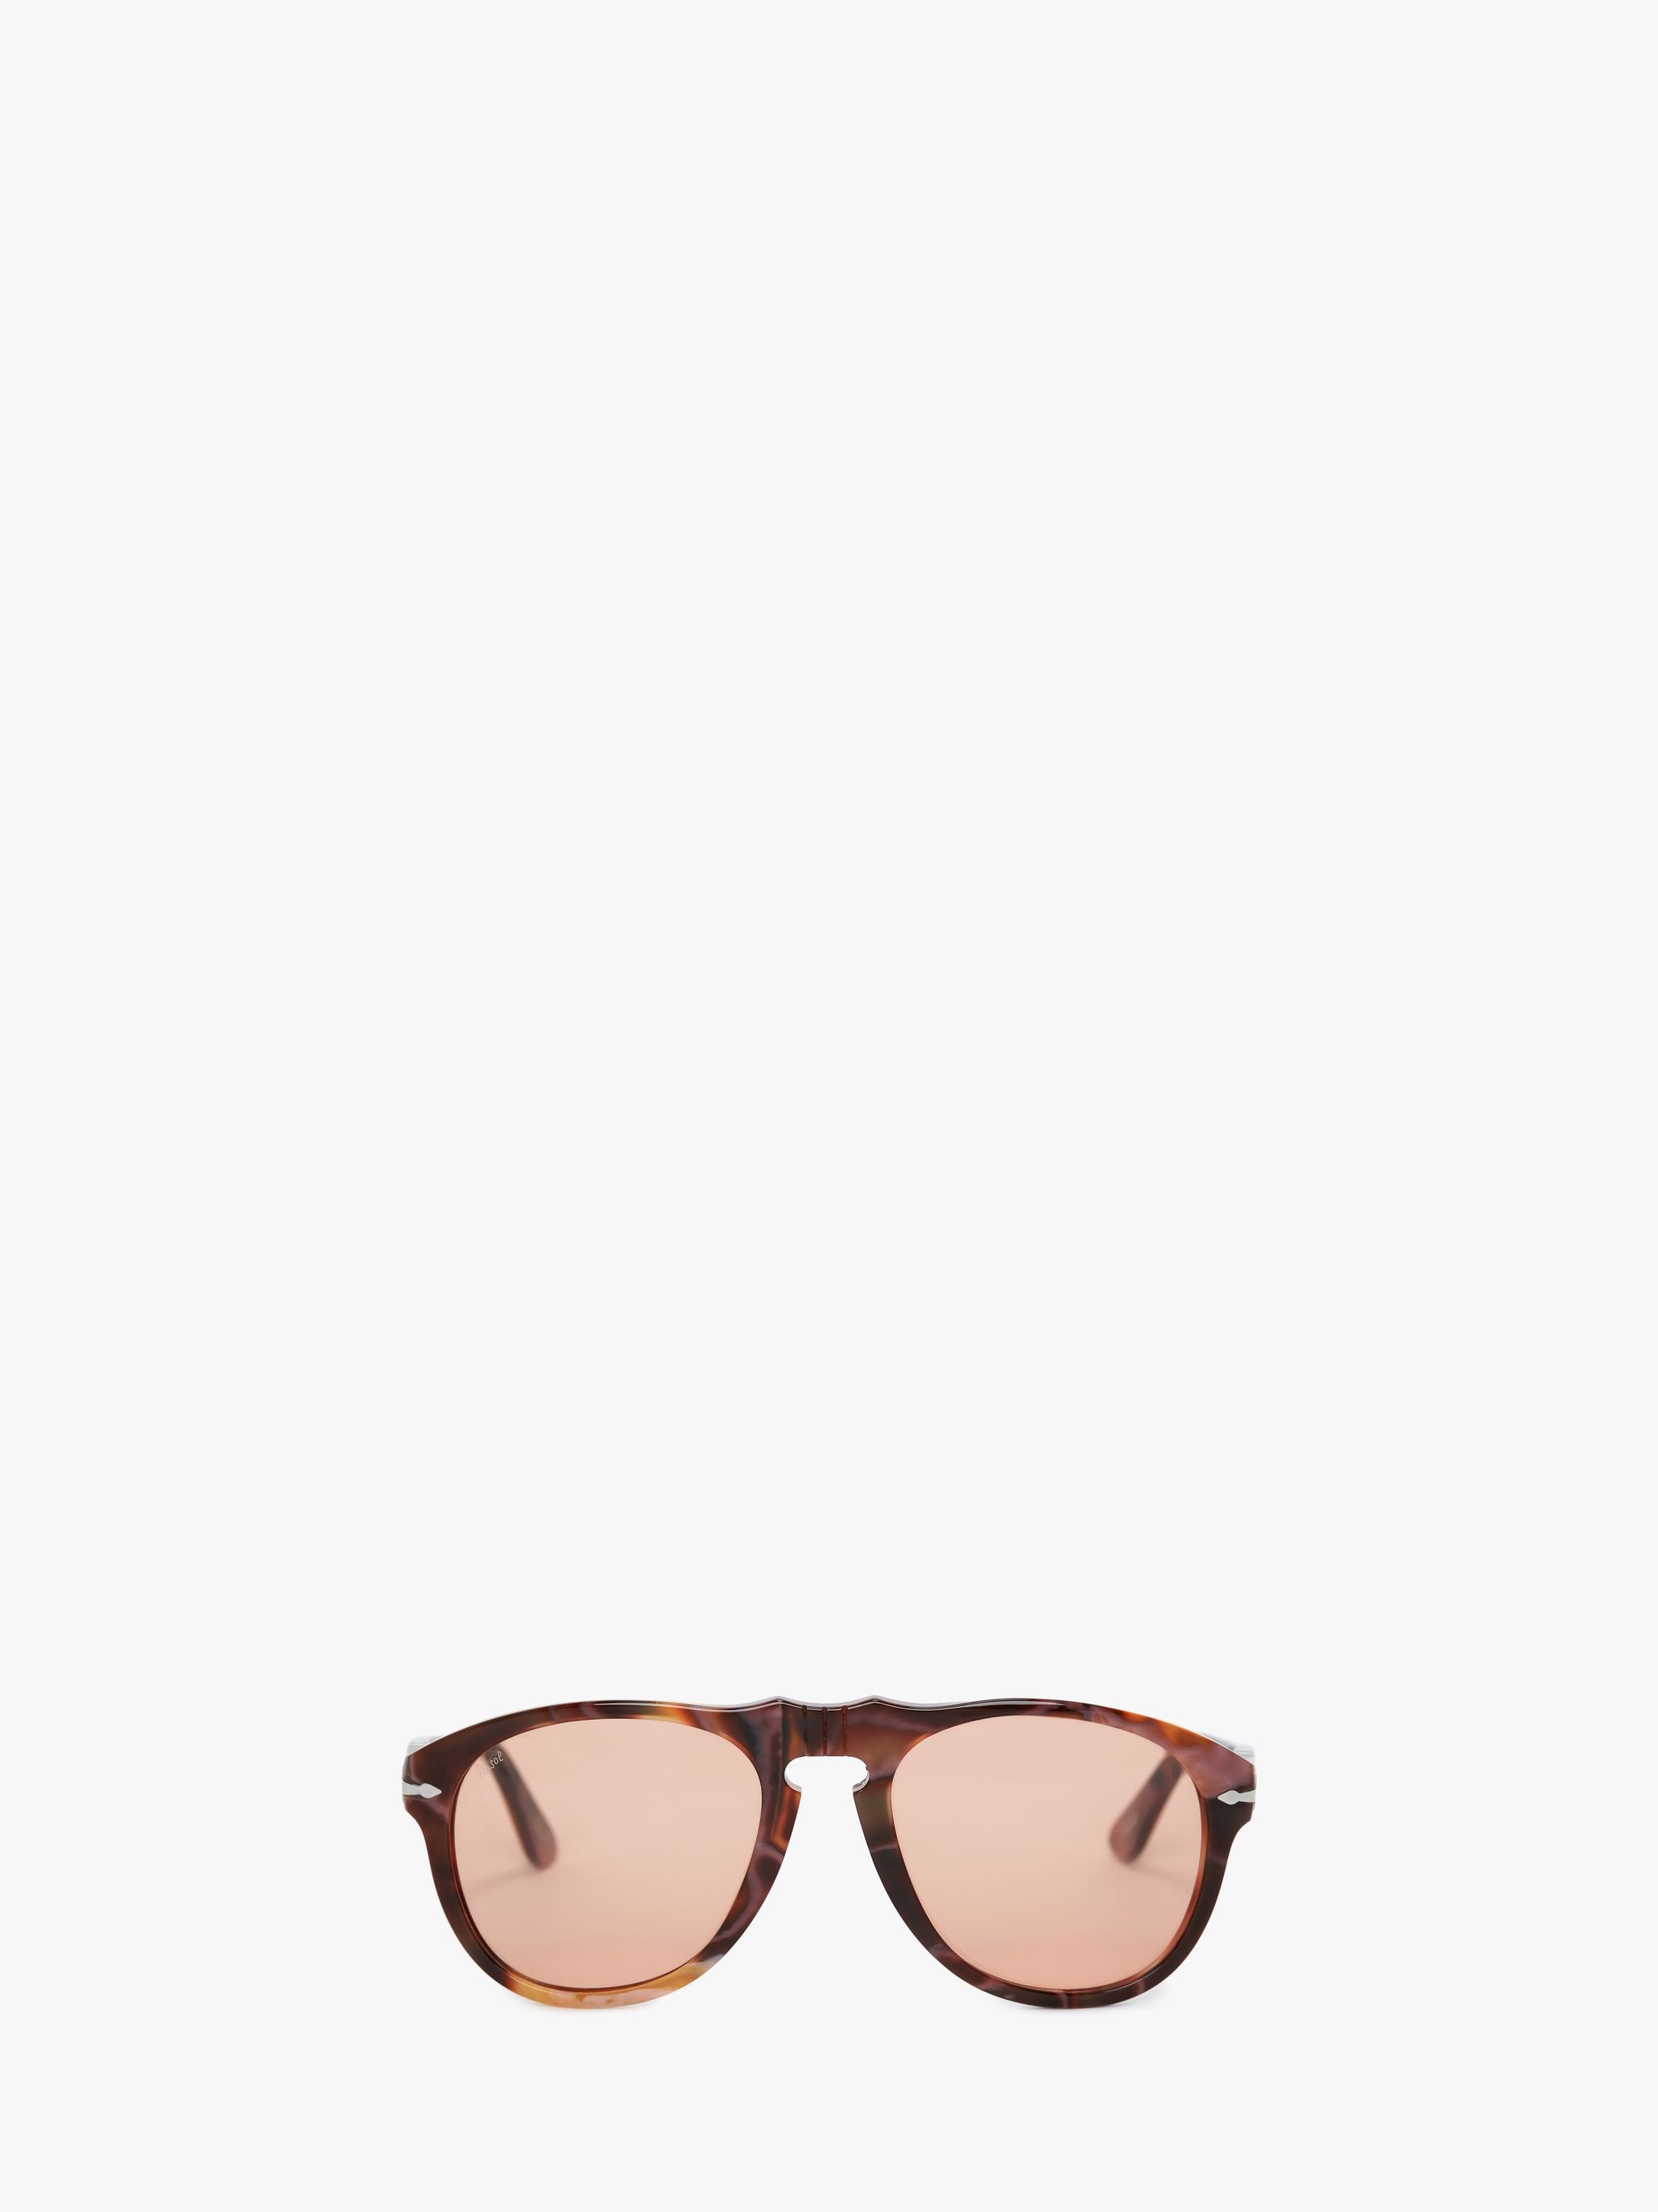 Солнцезащитные очки - авиатор JW Anderson, коричневый солнцезащитные очки carrera авиаторы оправа металл черный